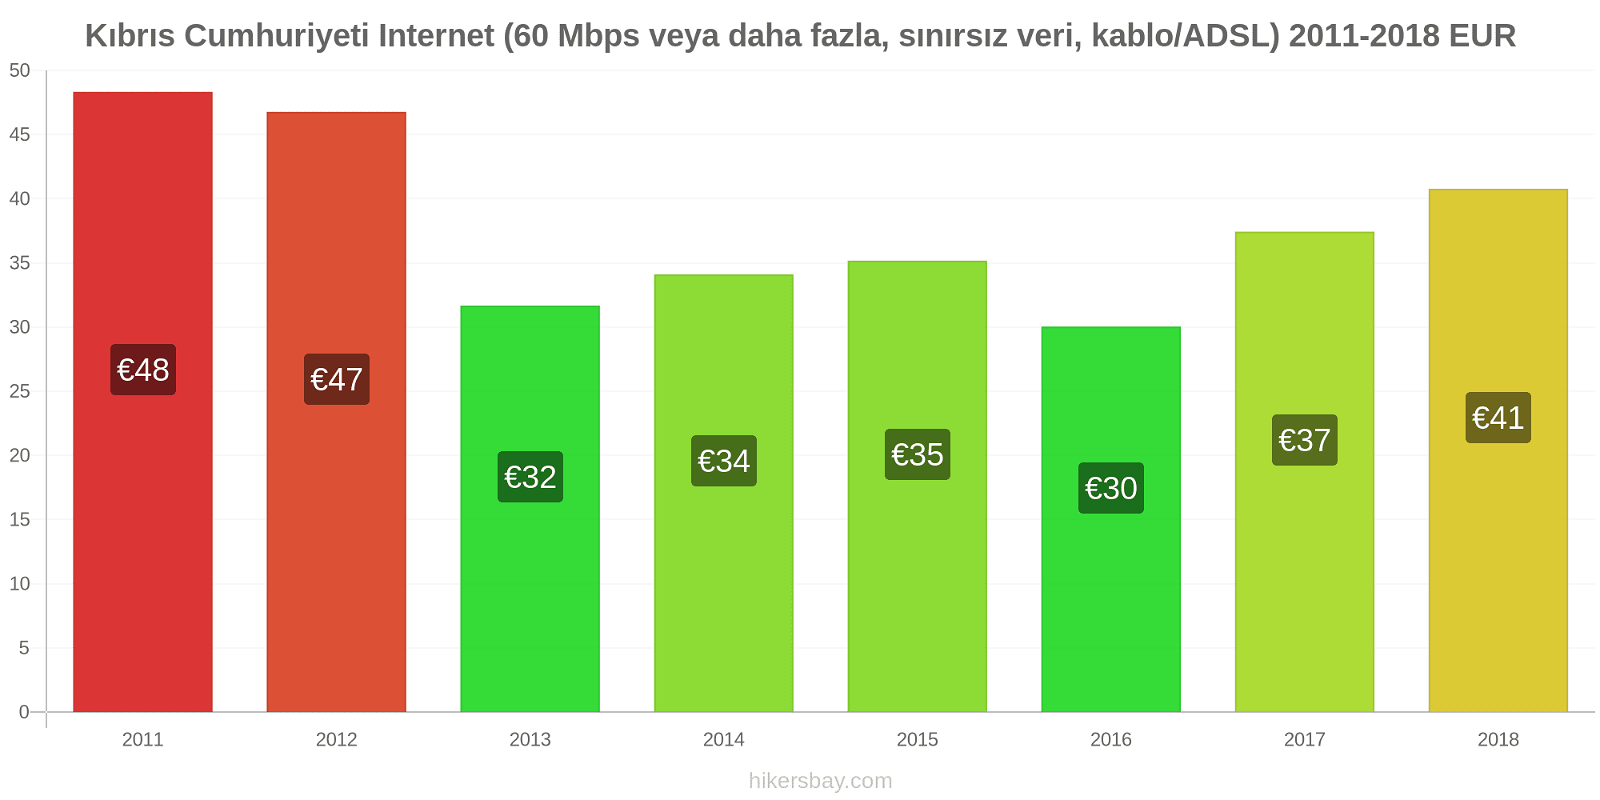 Kıbrıs Cumhuriyeti fiyat değişiklikleri İnternet (60 Mbps veya daha fazla, sınırsız veri, kablo/ADSL) hikersbay.com